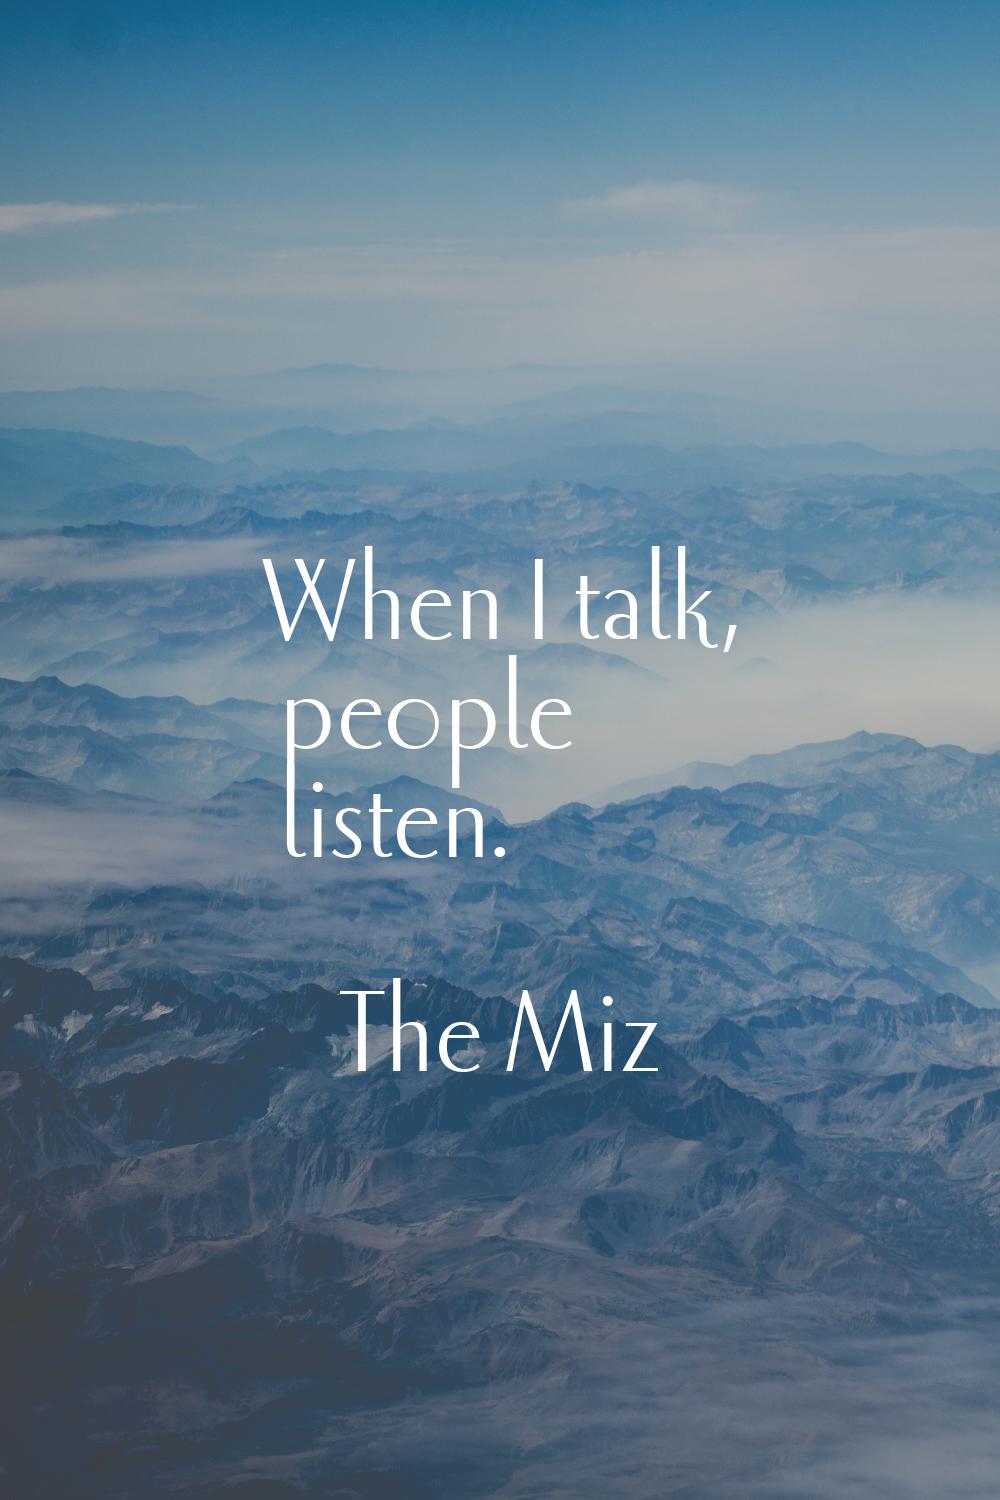 When I talk, people listen.